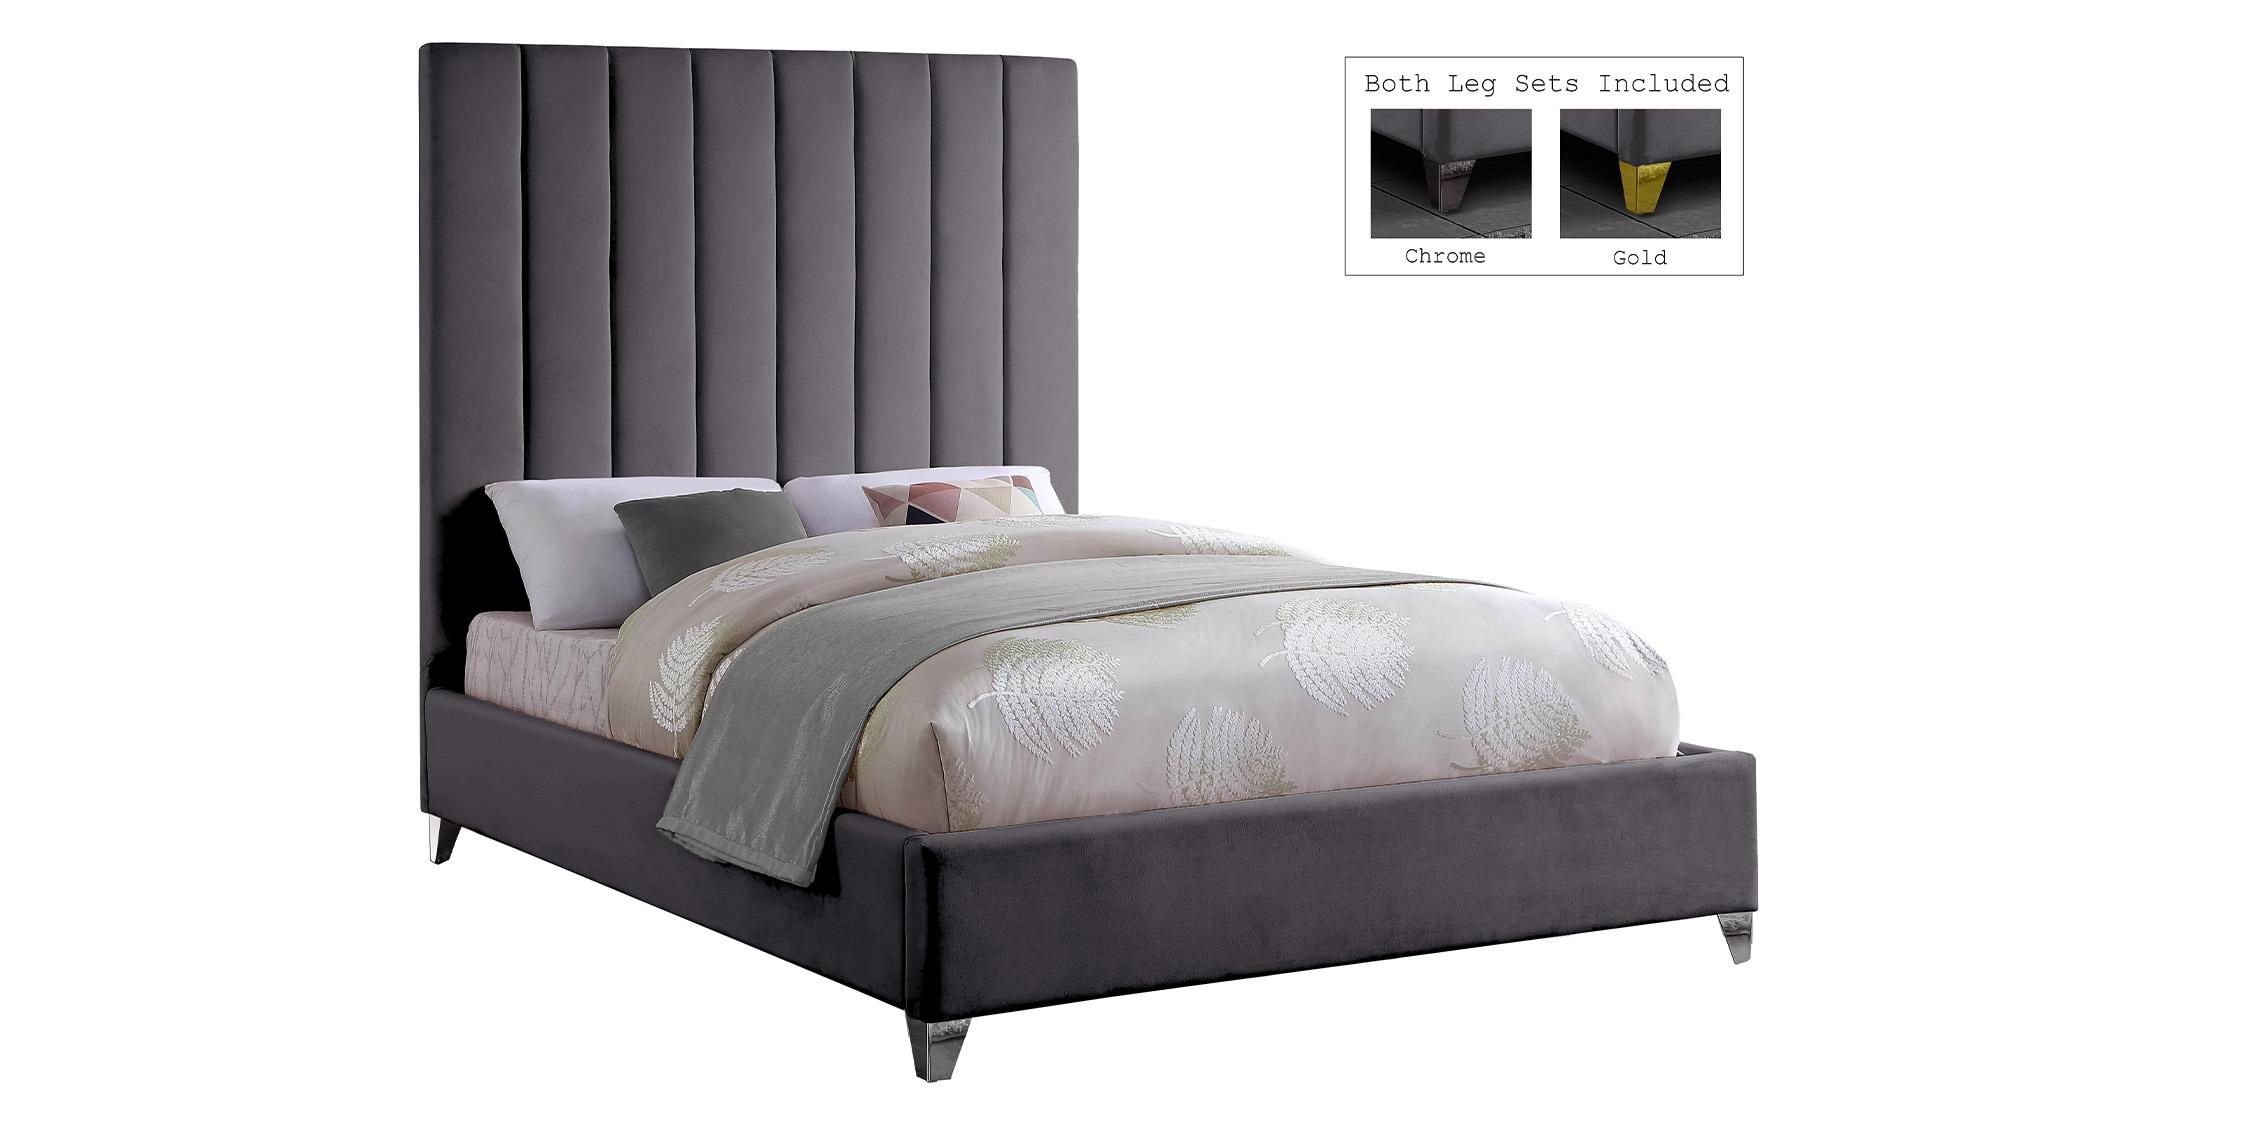 

    
ViaGrey-F Meridian Furniture Platform Bed
